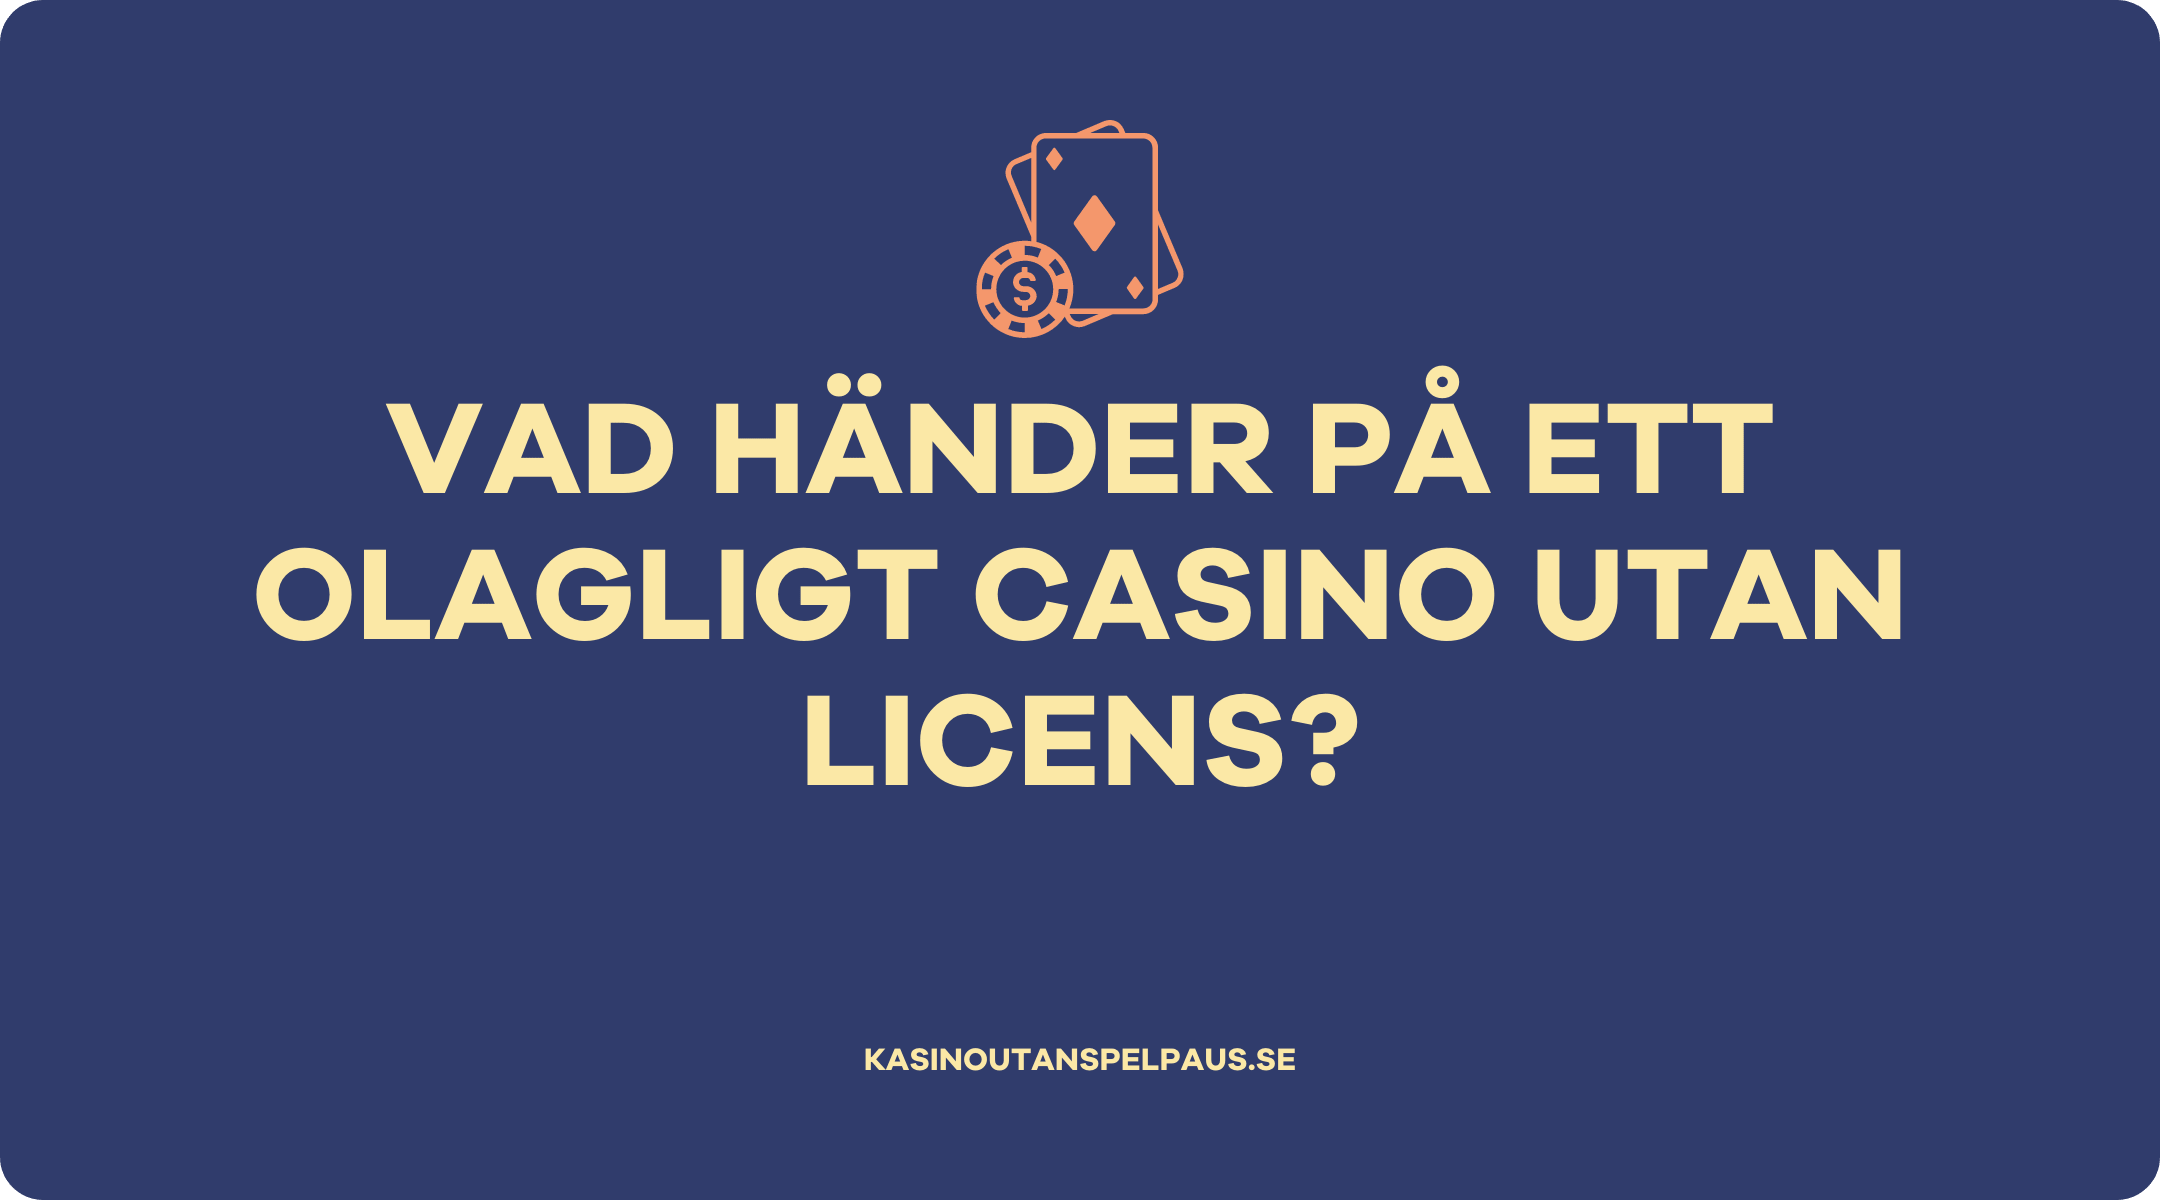 Vad händer på ett olagligt casino utan licens?